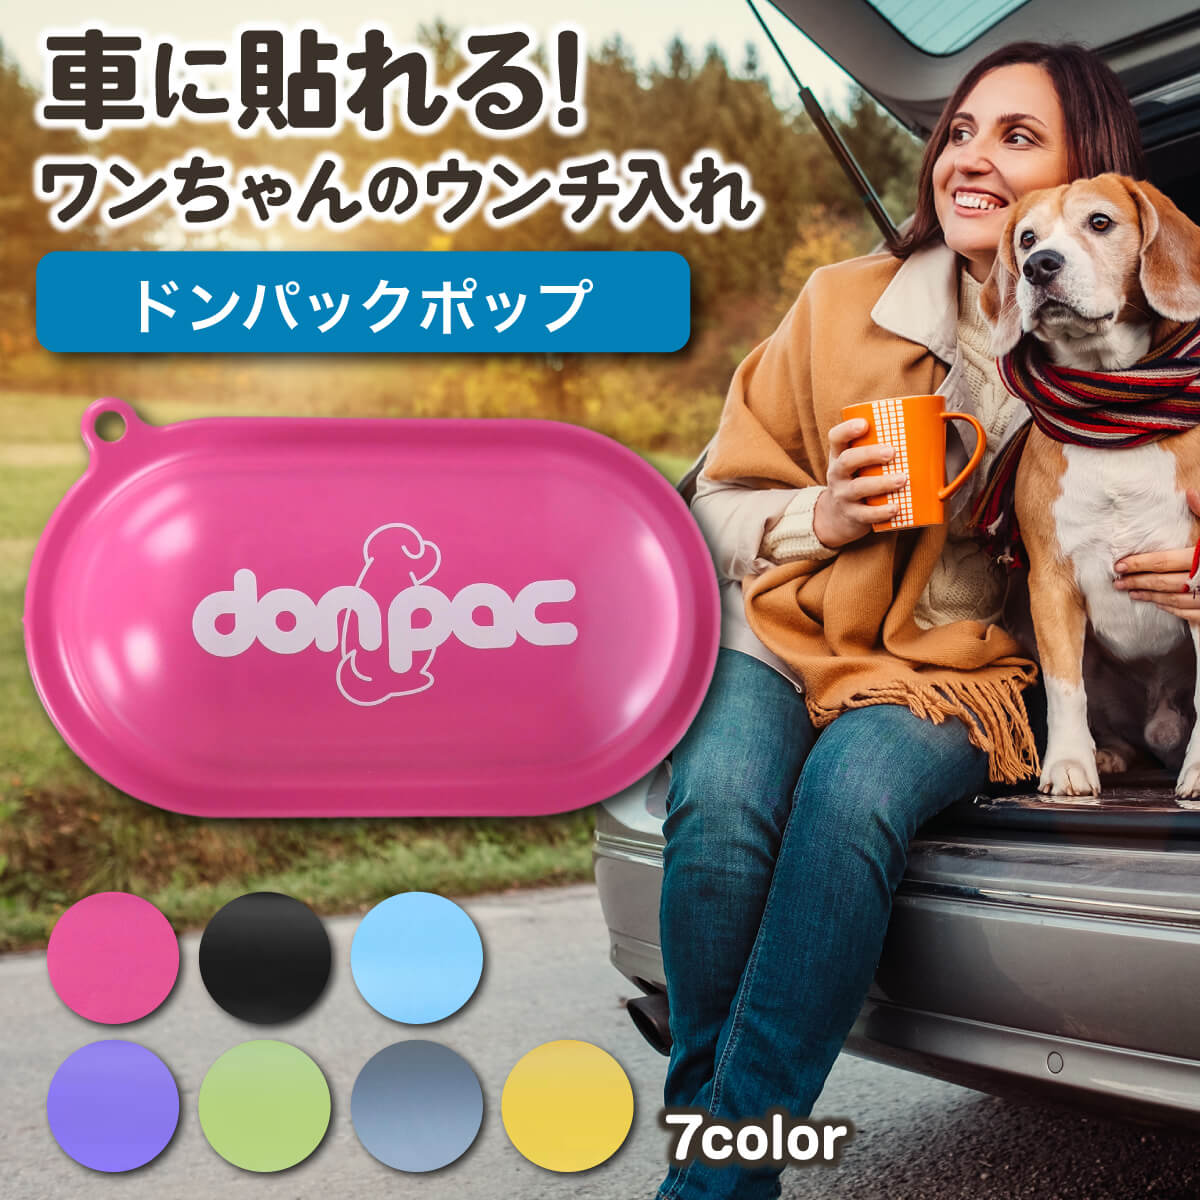 ドンパック don-pac POP 車 貼れる 臭わない バッグ 犬 ピンク うんち 袋 フン 処理袋 うんち処理袋 犬用 マナー